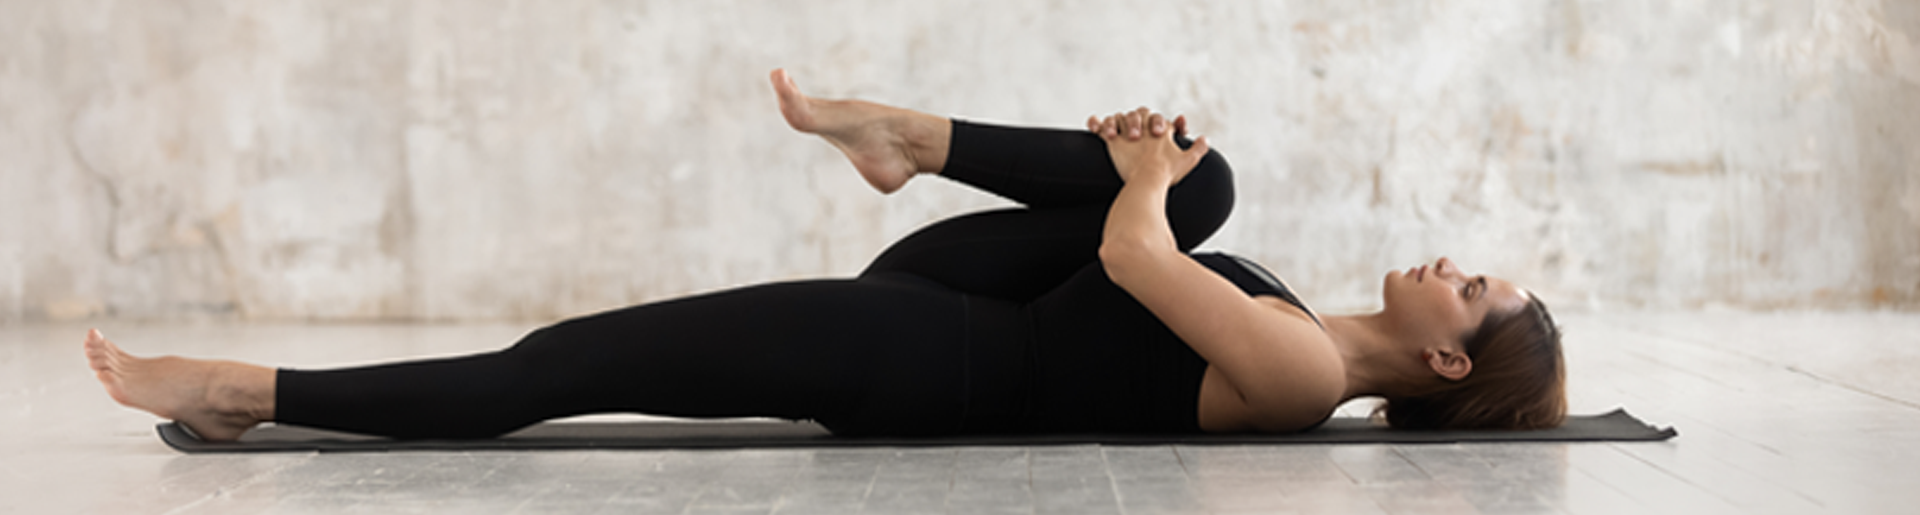 Упражнения от боли в коленях — лечебная гимнастика при болях коленных суставов, какую делать